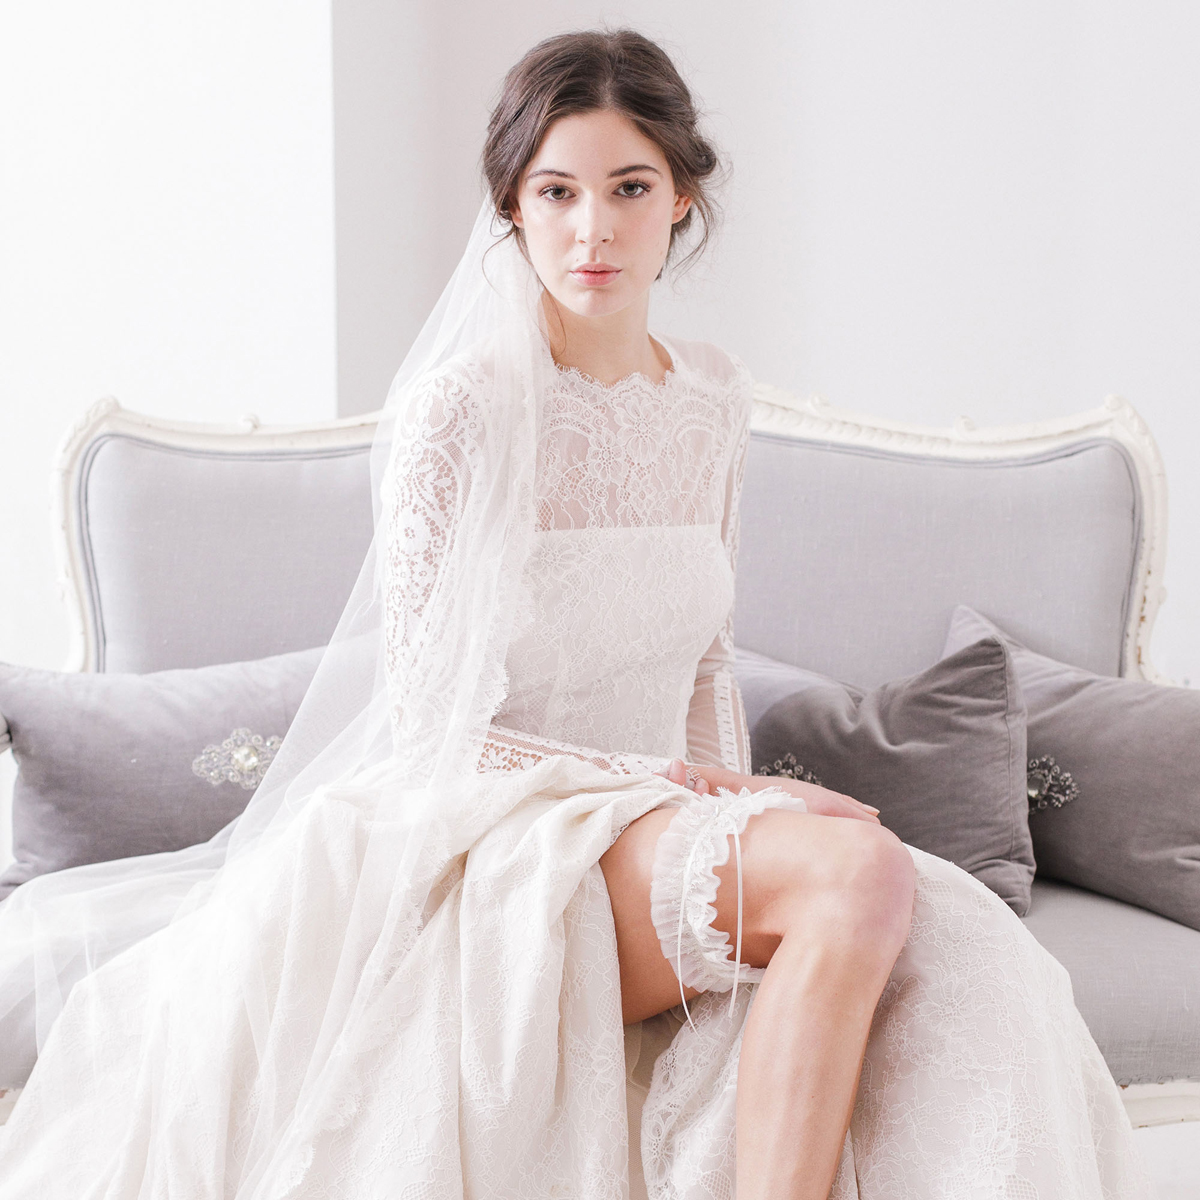 Britten Silk style wedding veil with french eyelash lace trim Mia